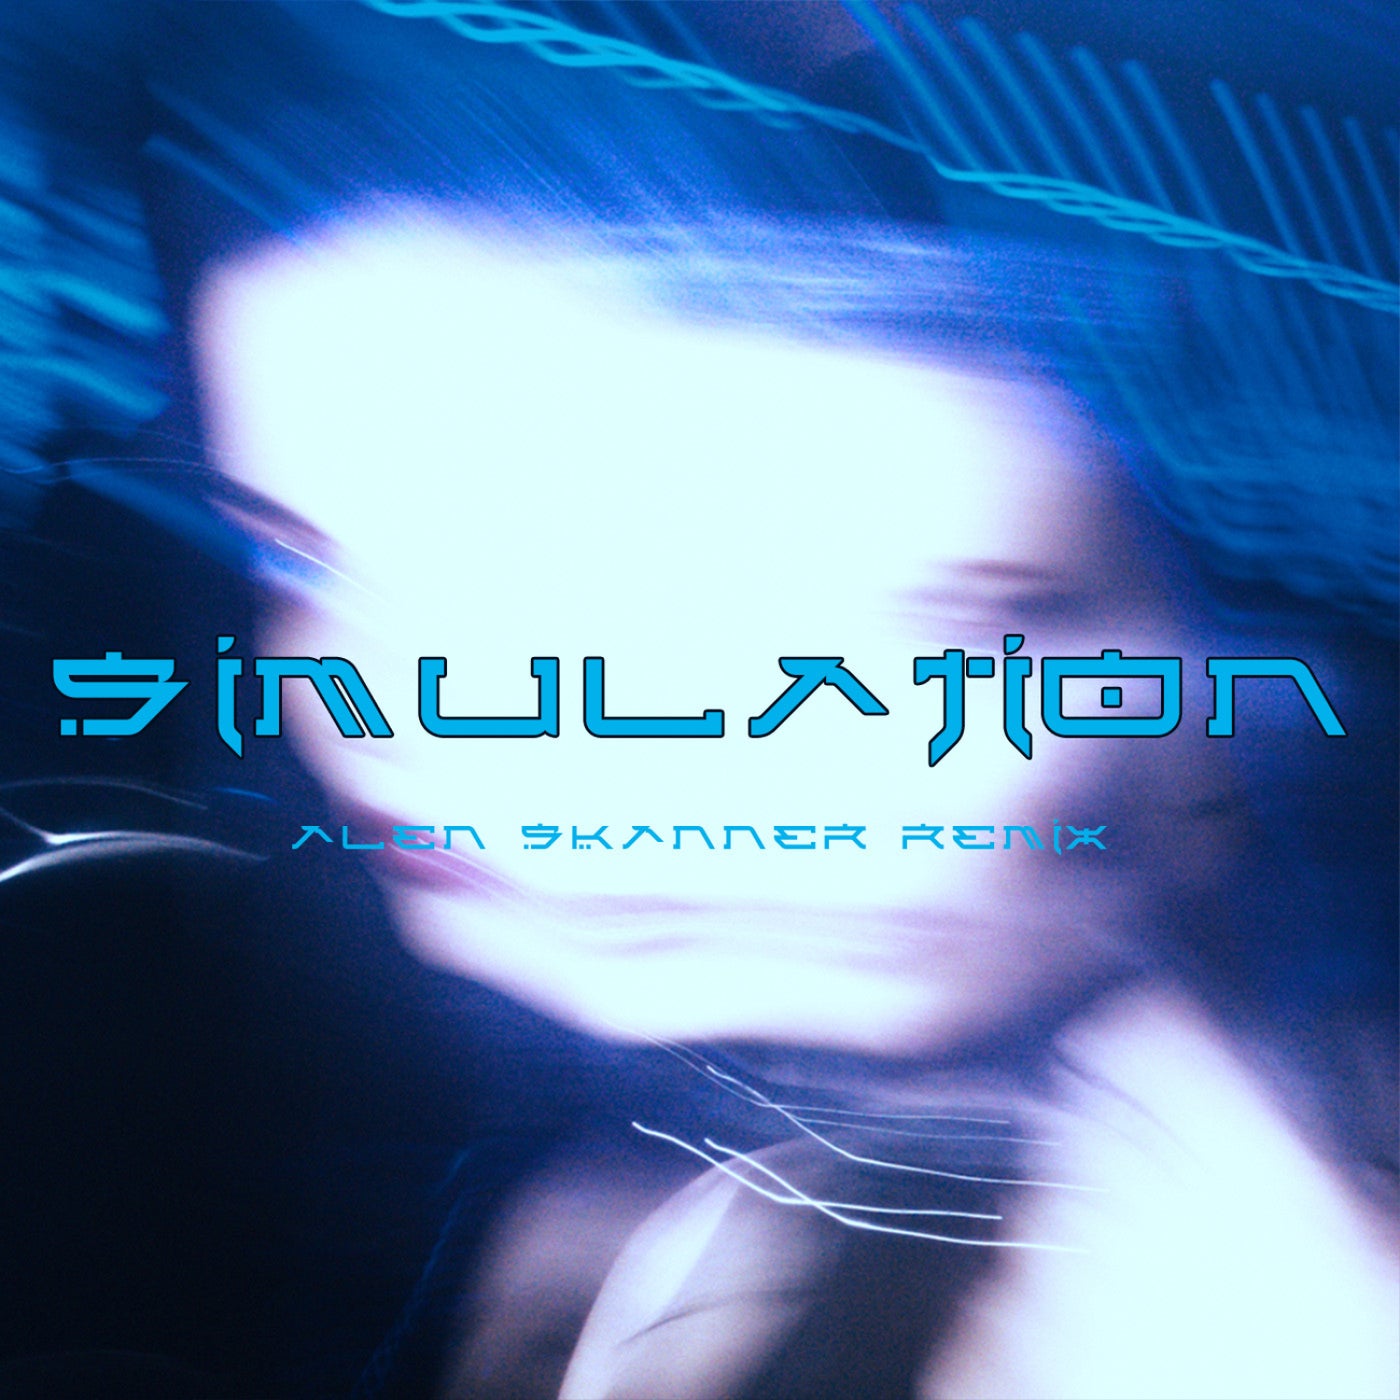 Simulation (Alen Skanner Remix)